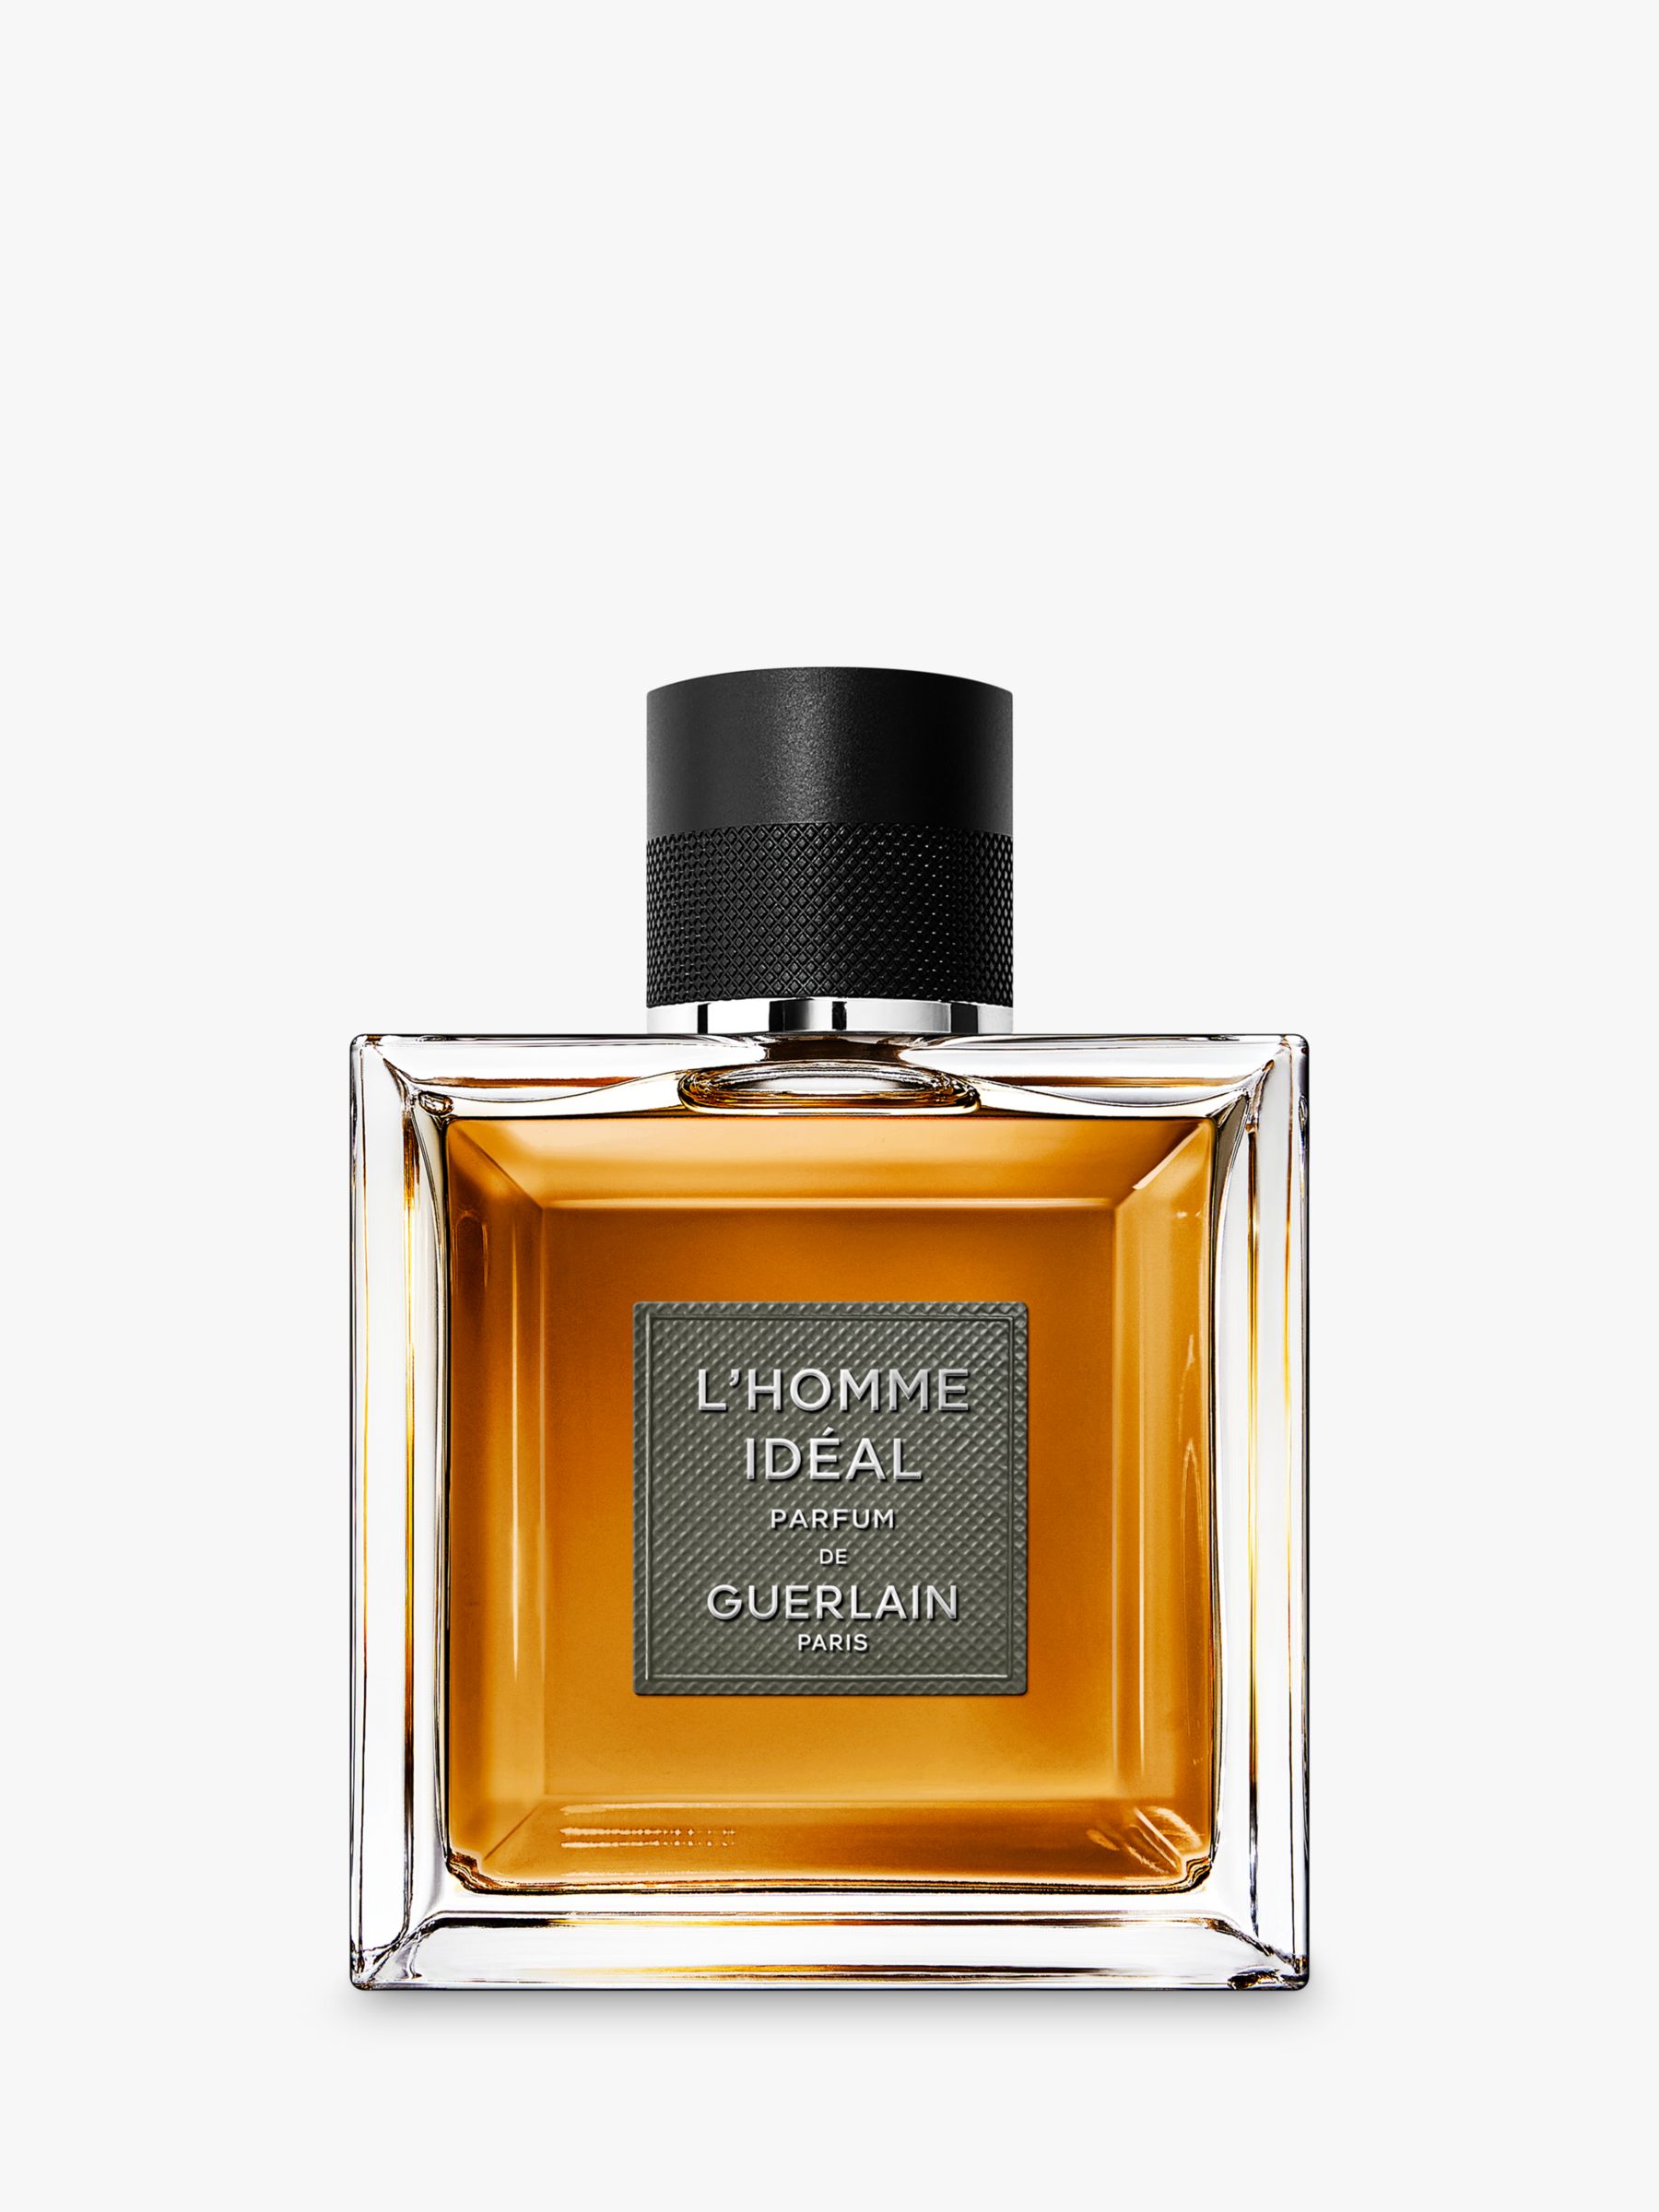 Guerlain L'Homme Idéal Le Parfum, 100ml 1